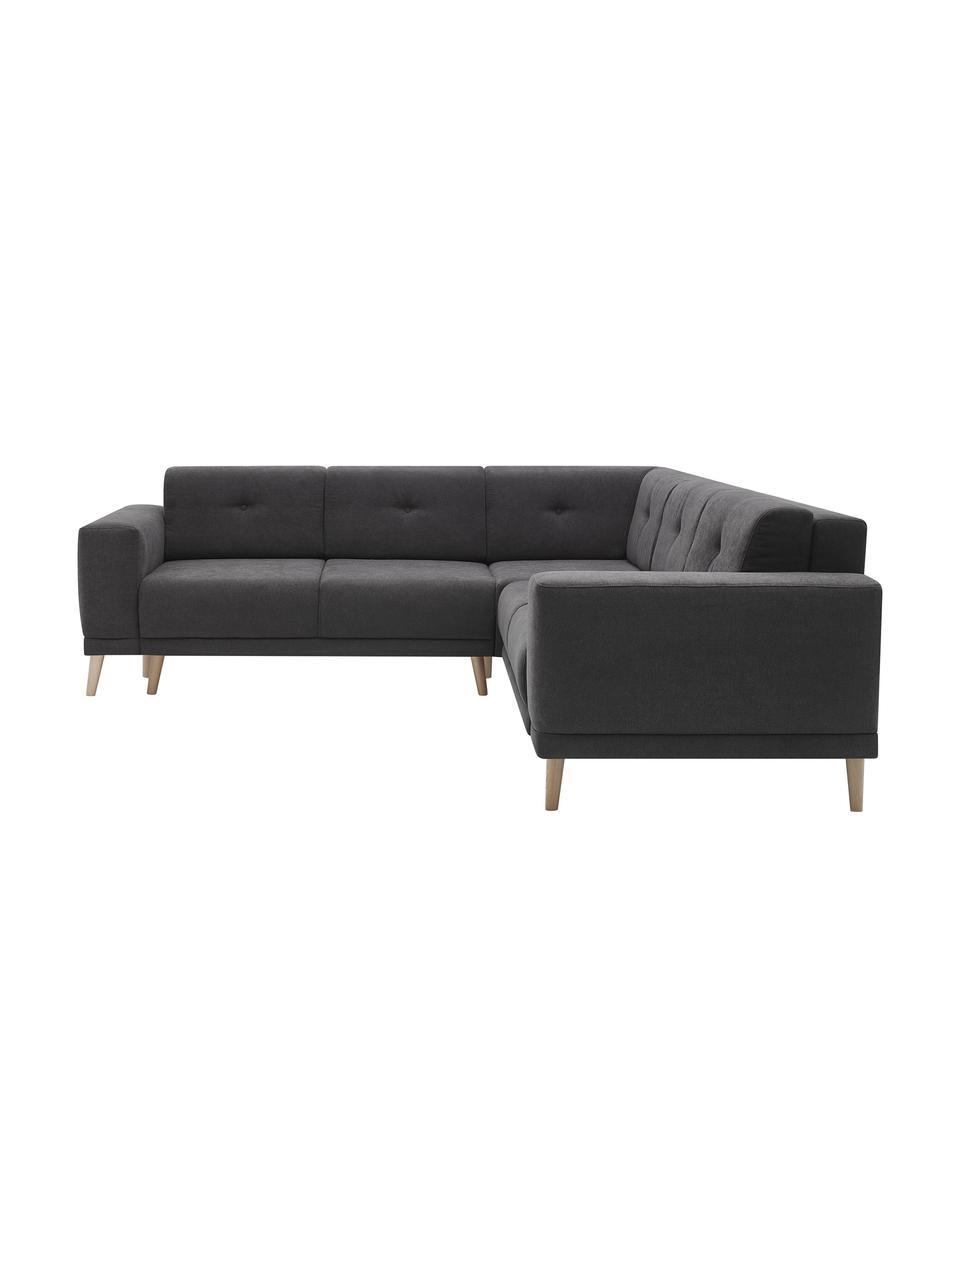 Sofa narożna z funkcją spania Luna, Tapicerka: 100% aksamit poliestrowy, Nogi: metal lakierowany, Ciemny szary, S 260 x G 260 cm